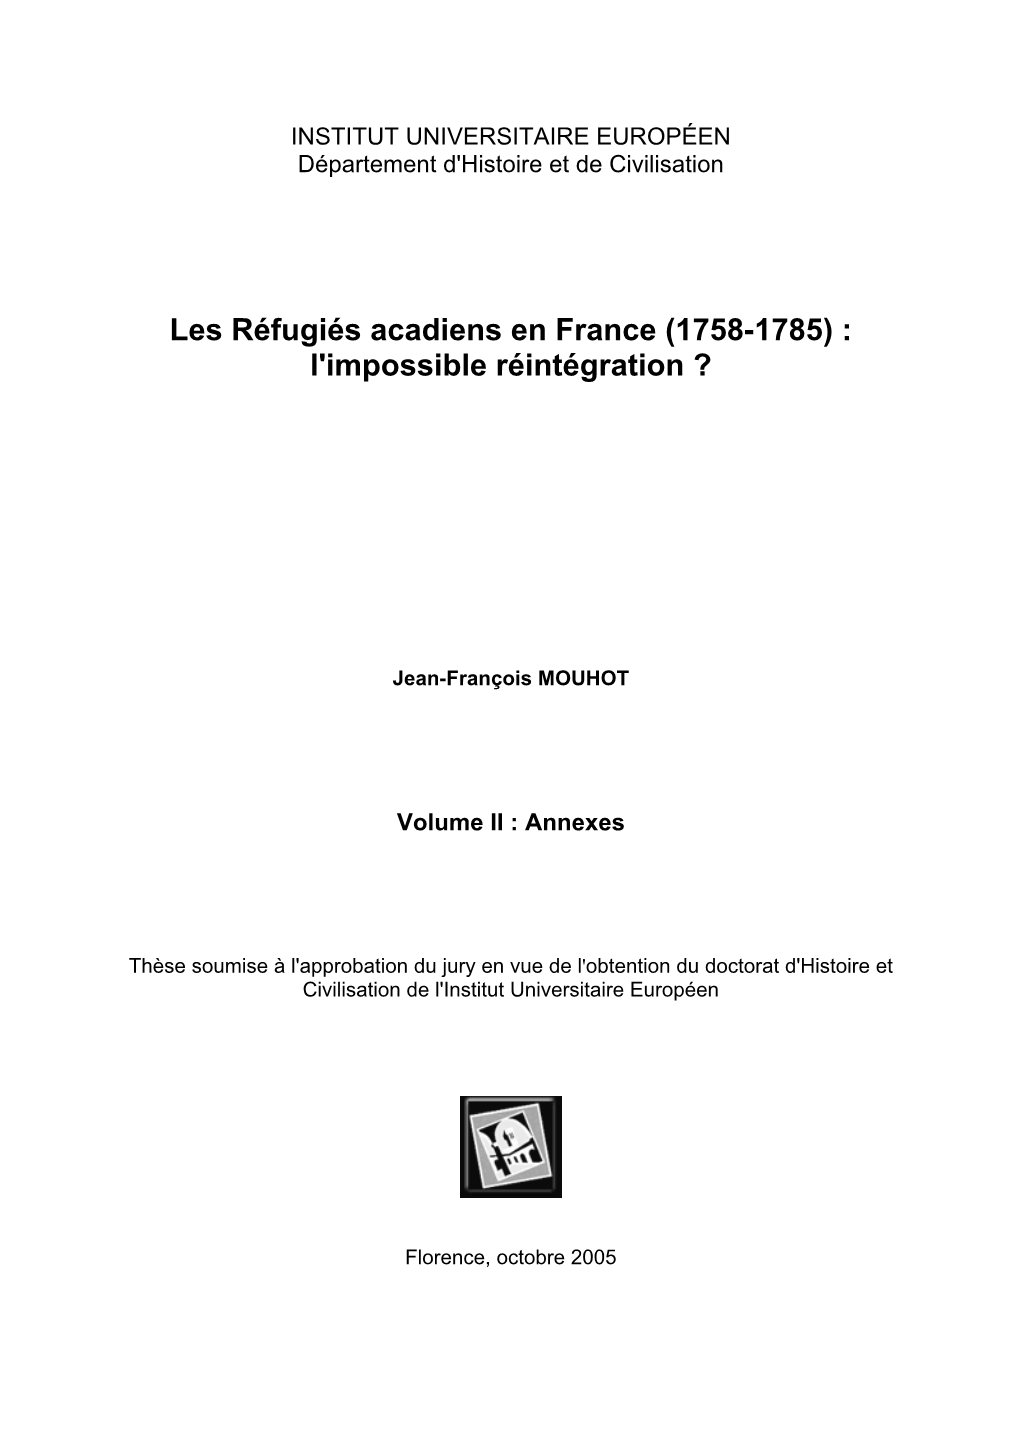 Les Réfugiés Acadiens En France (1758-1785) : L'impossible Réintégration ?